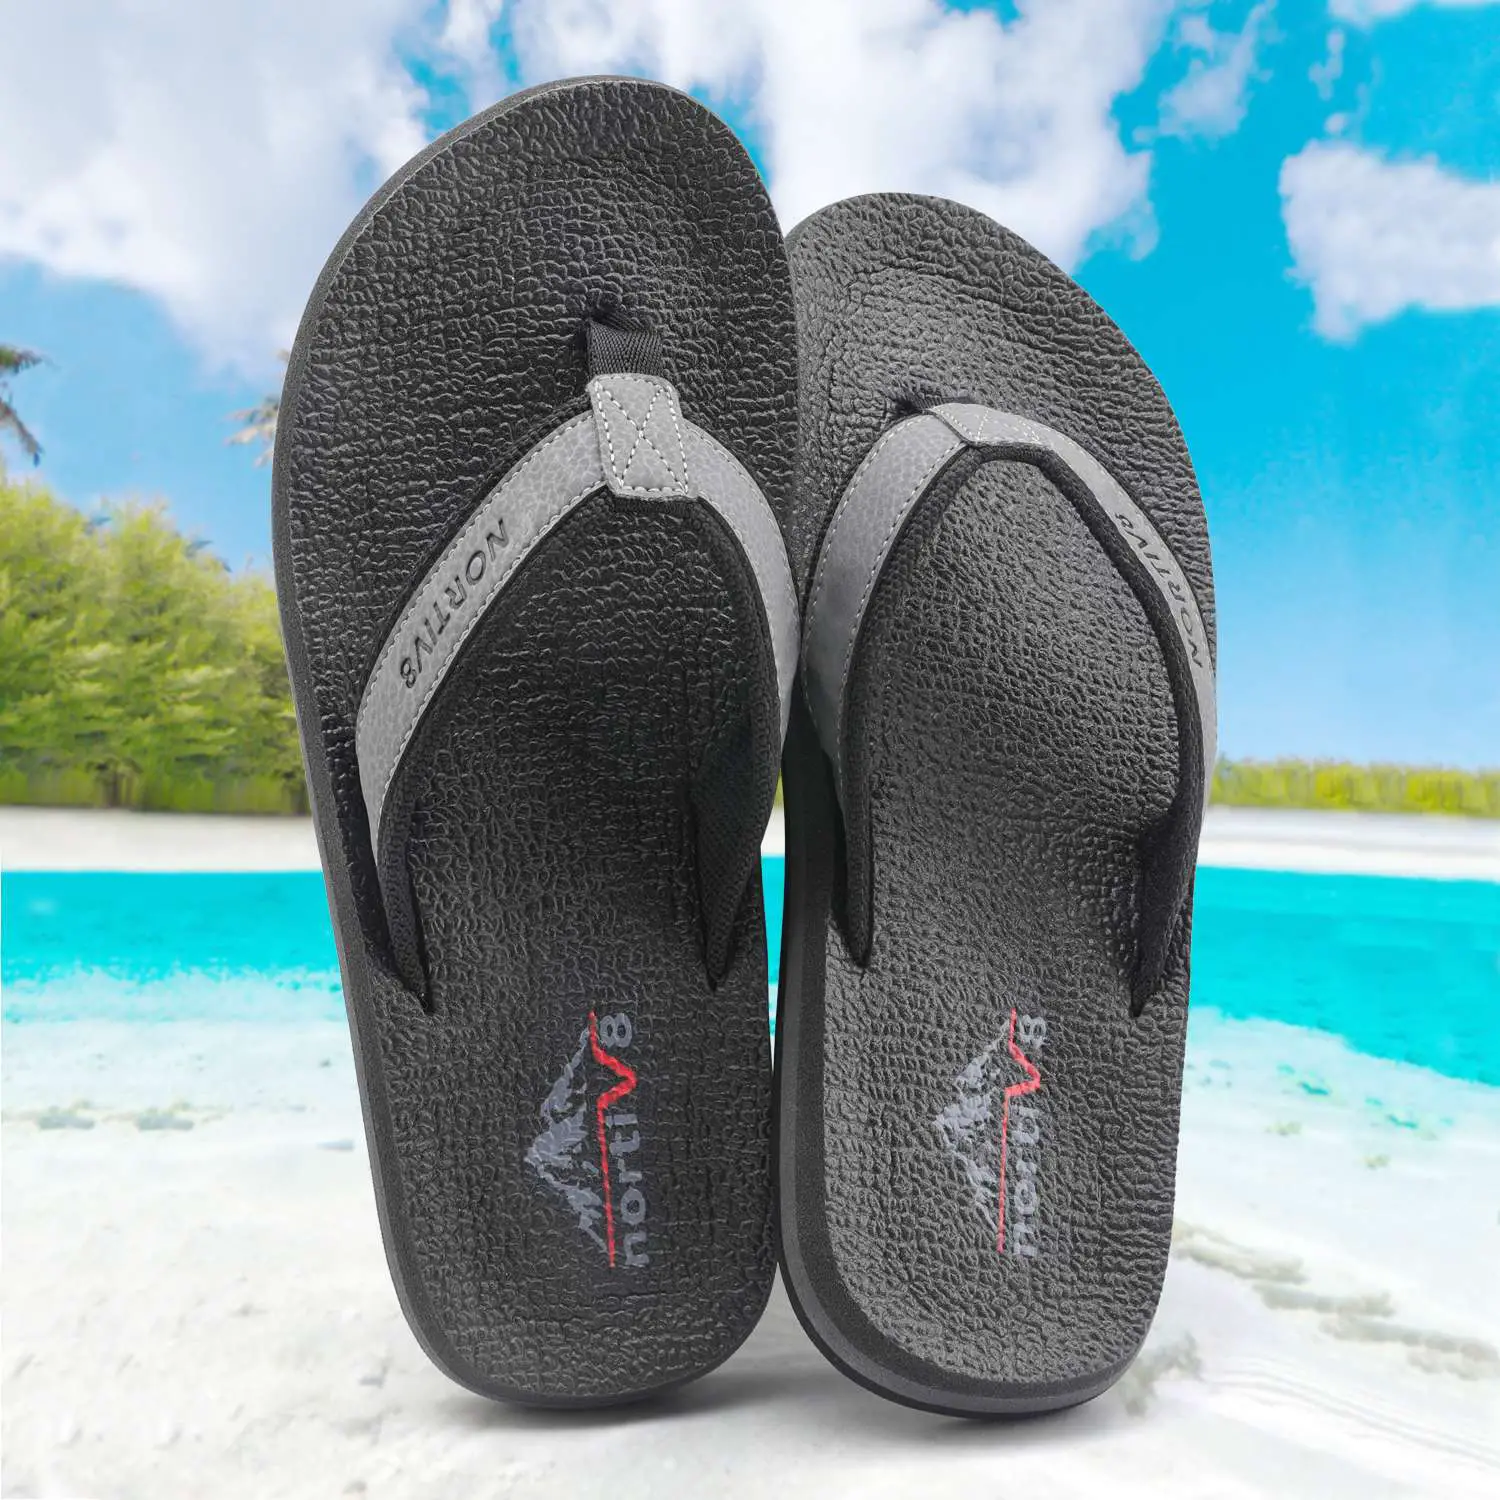 Mens Flip Flops Beach Sandals Lightweight Rubber Sole Comfort Thongs ...